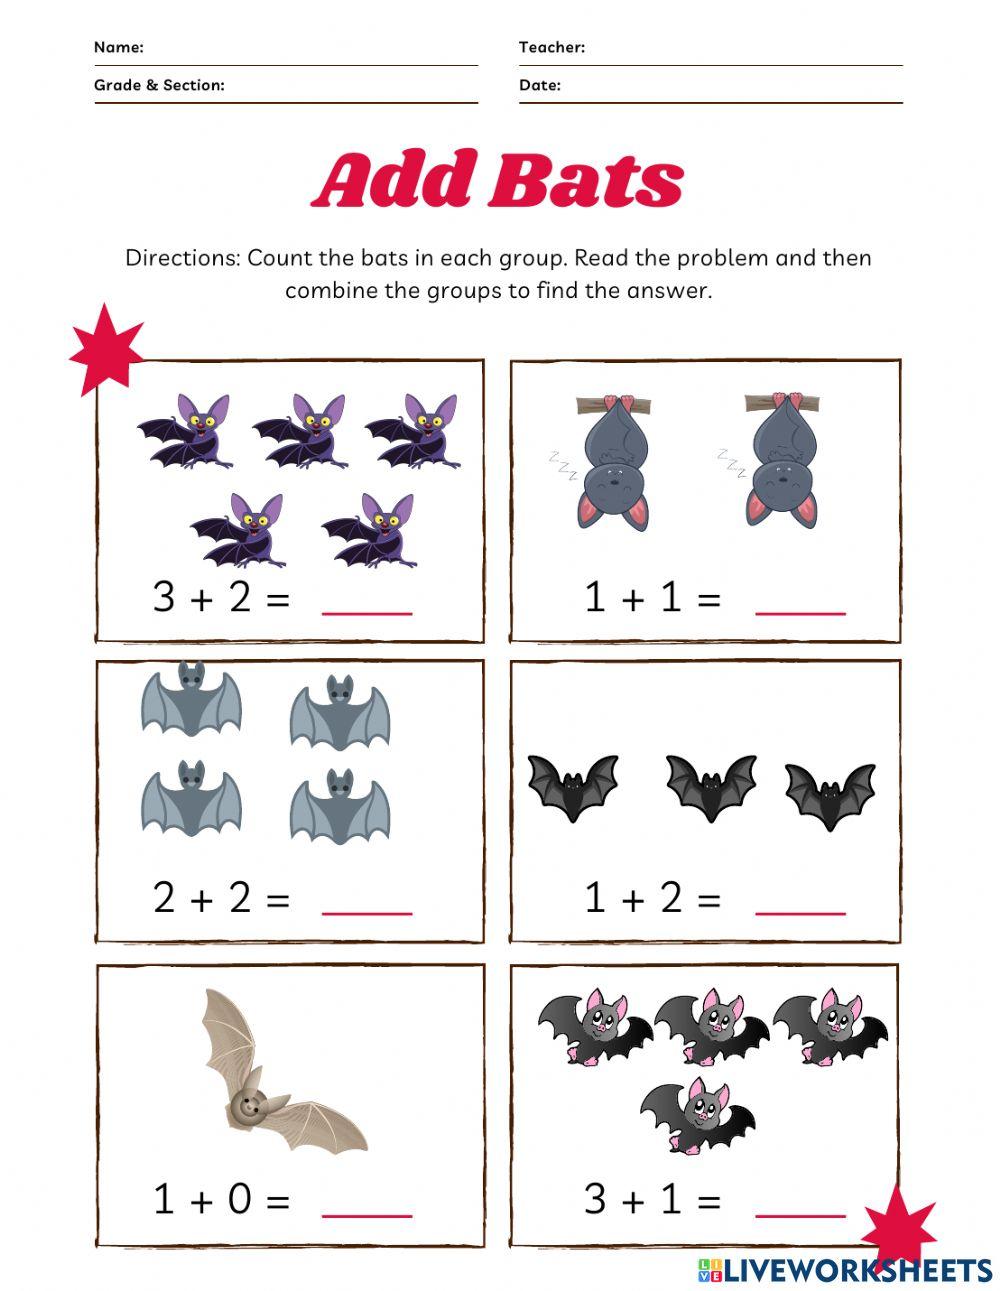 Add bats